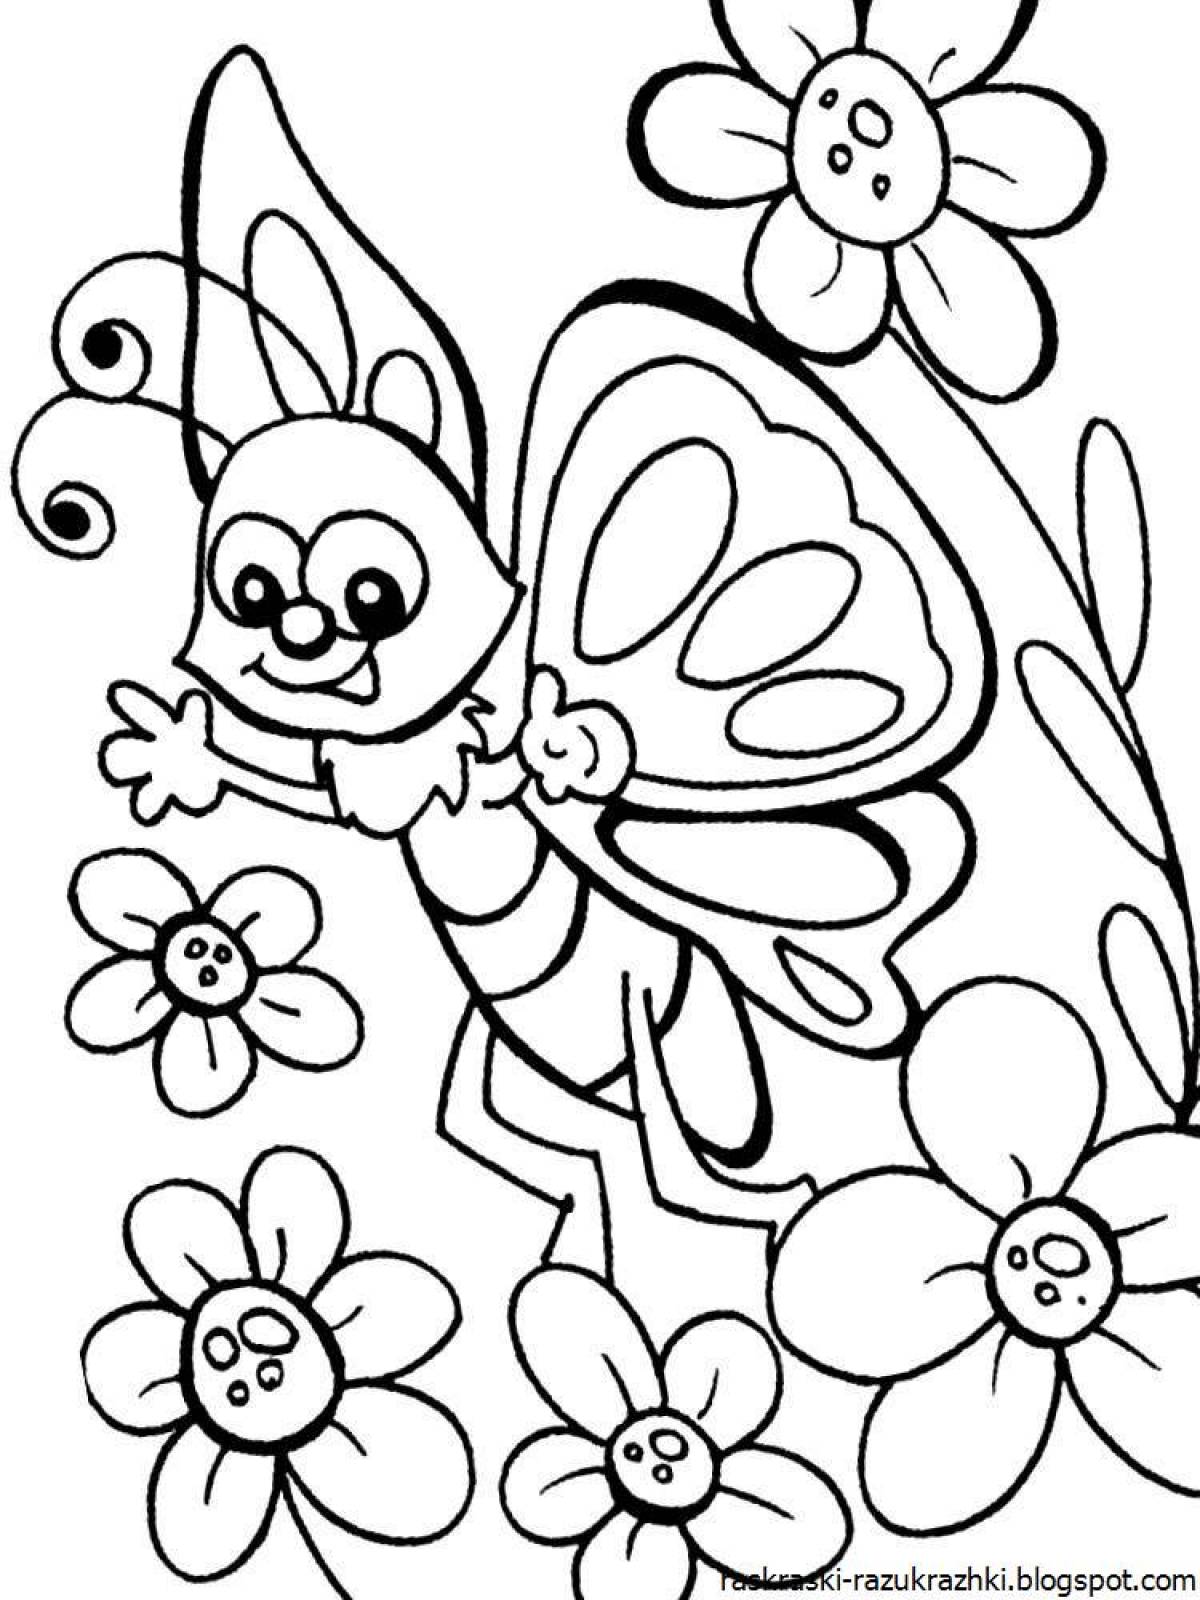 Яркая бабочка-раскраска для детей 6-7 лет